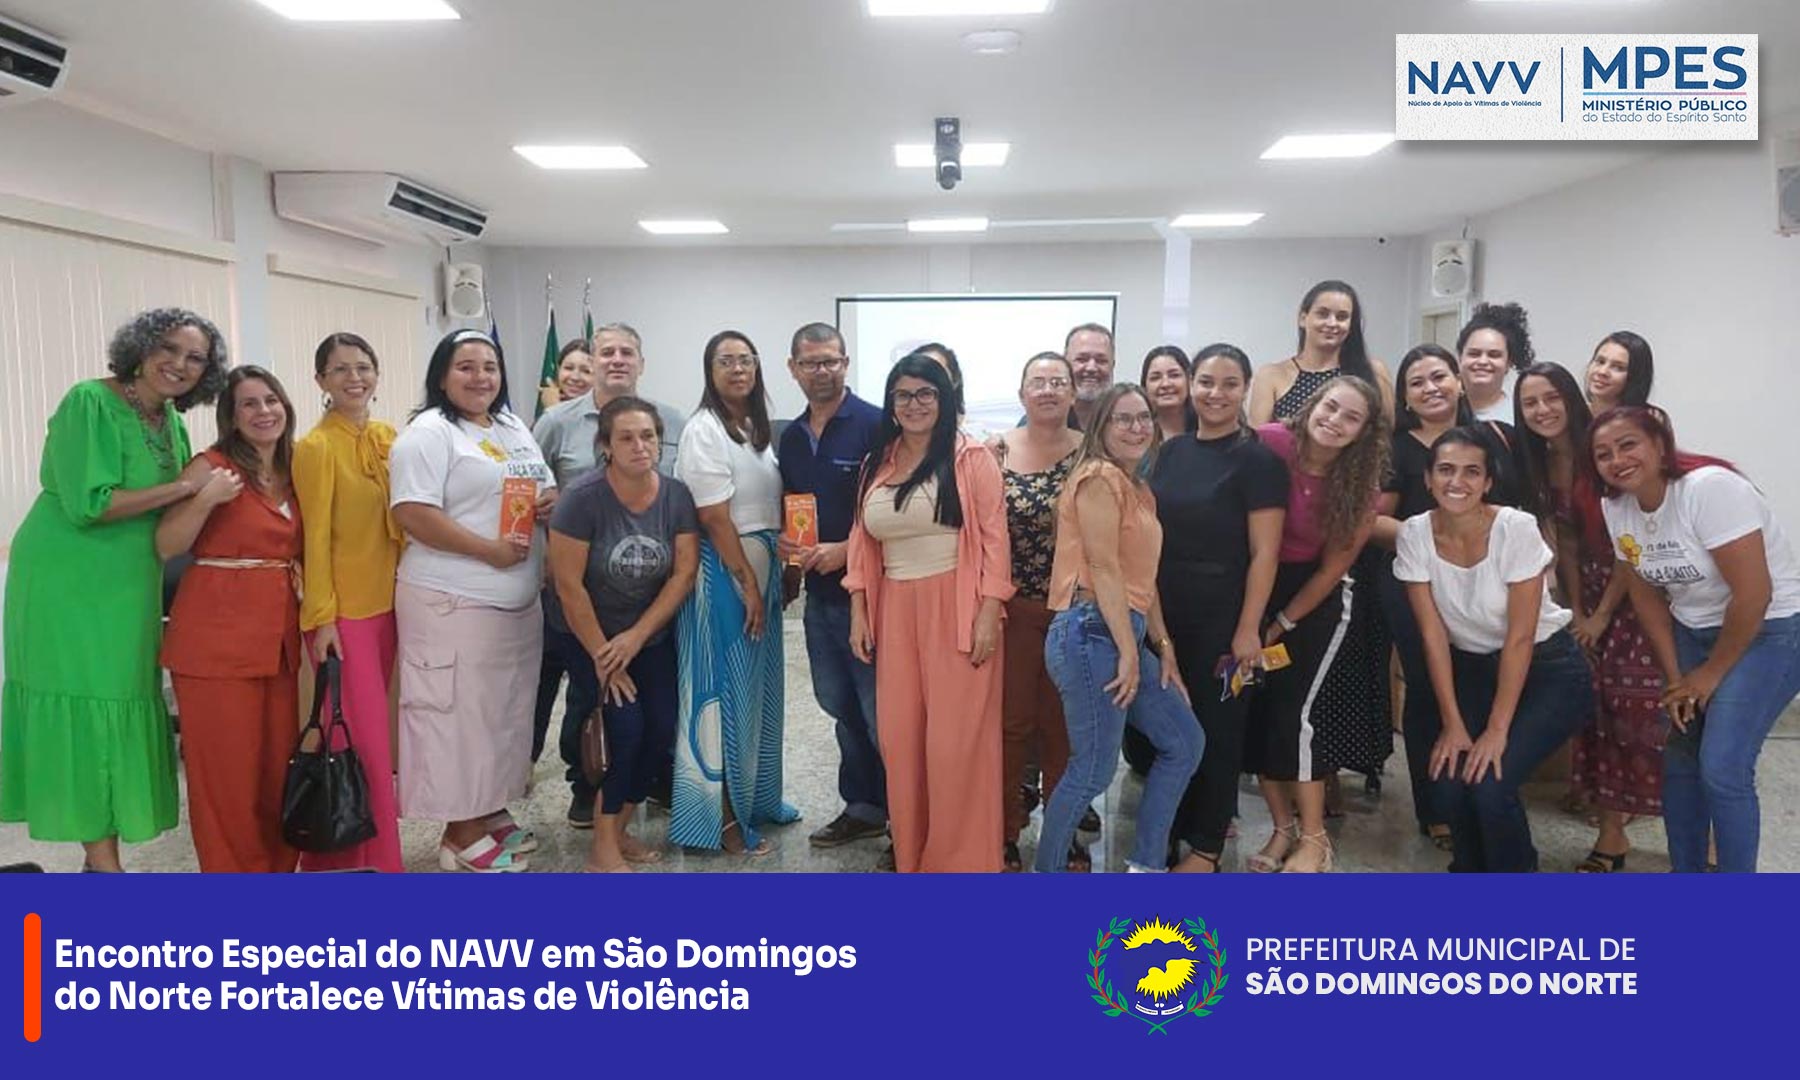 Encontro Especial do NAVV em São Domingos do Norte Fortalece Vítimas de Violência